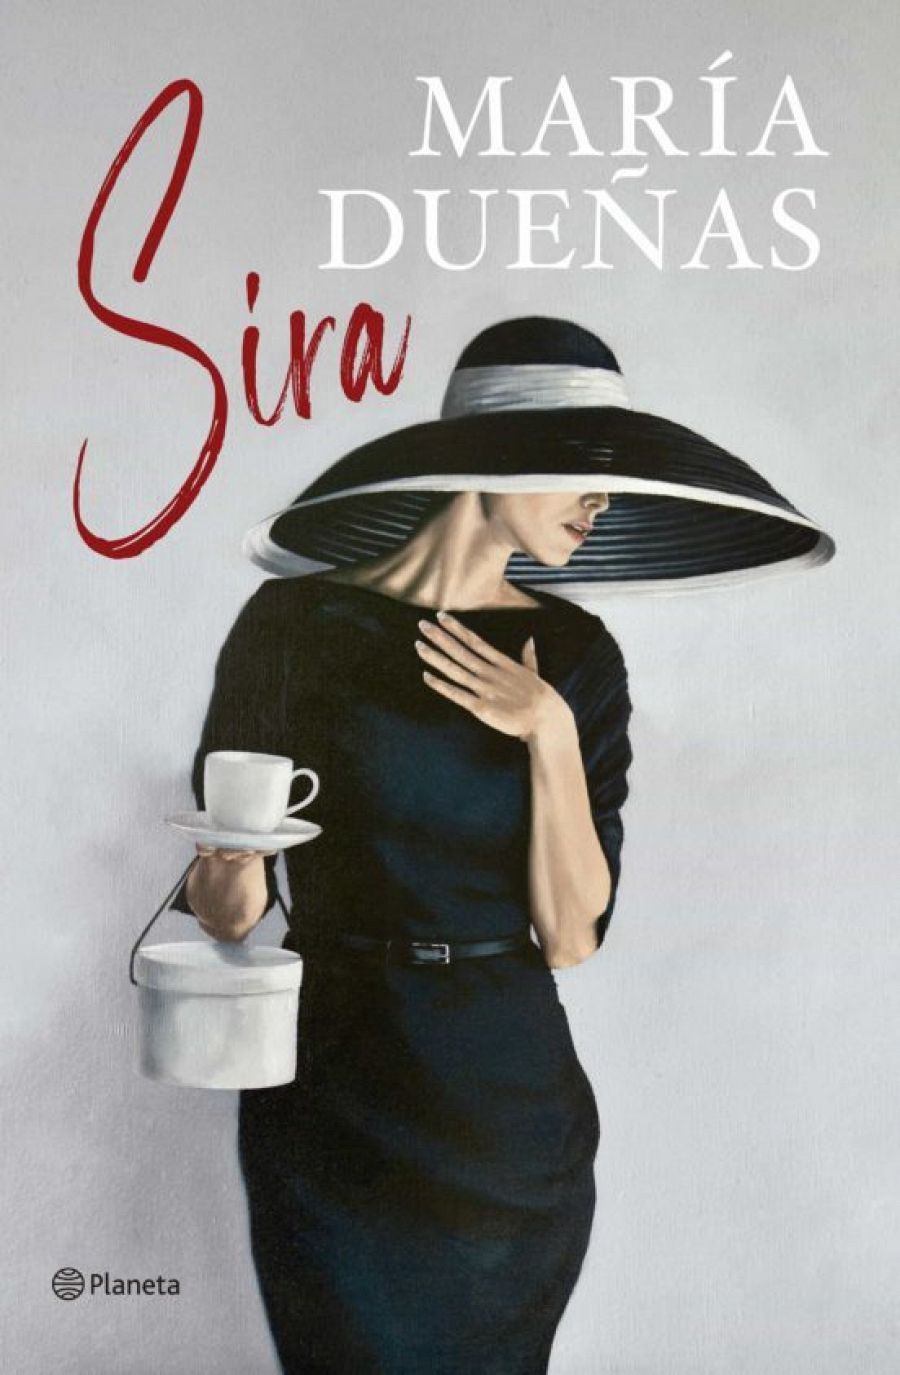  'Sira', de María Dueñas llega a las librerías con 500.000 ejemplares en su primera tirada